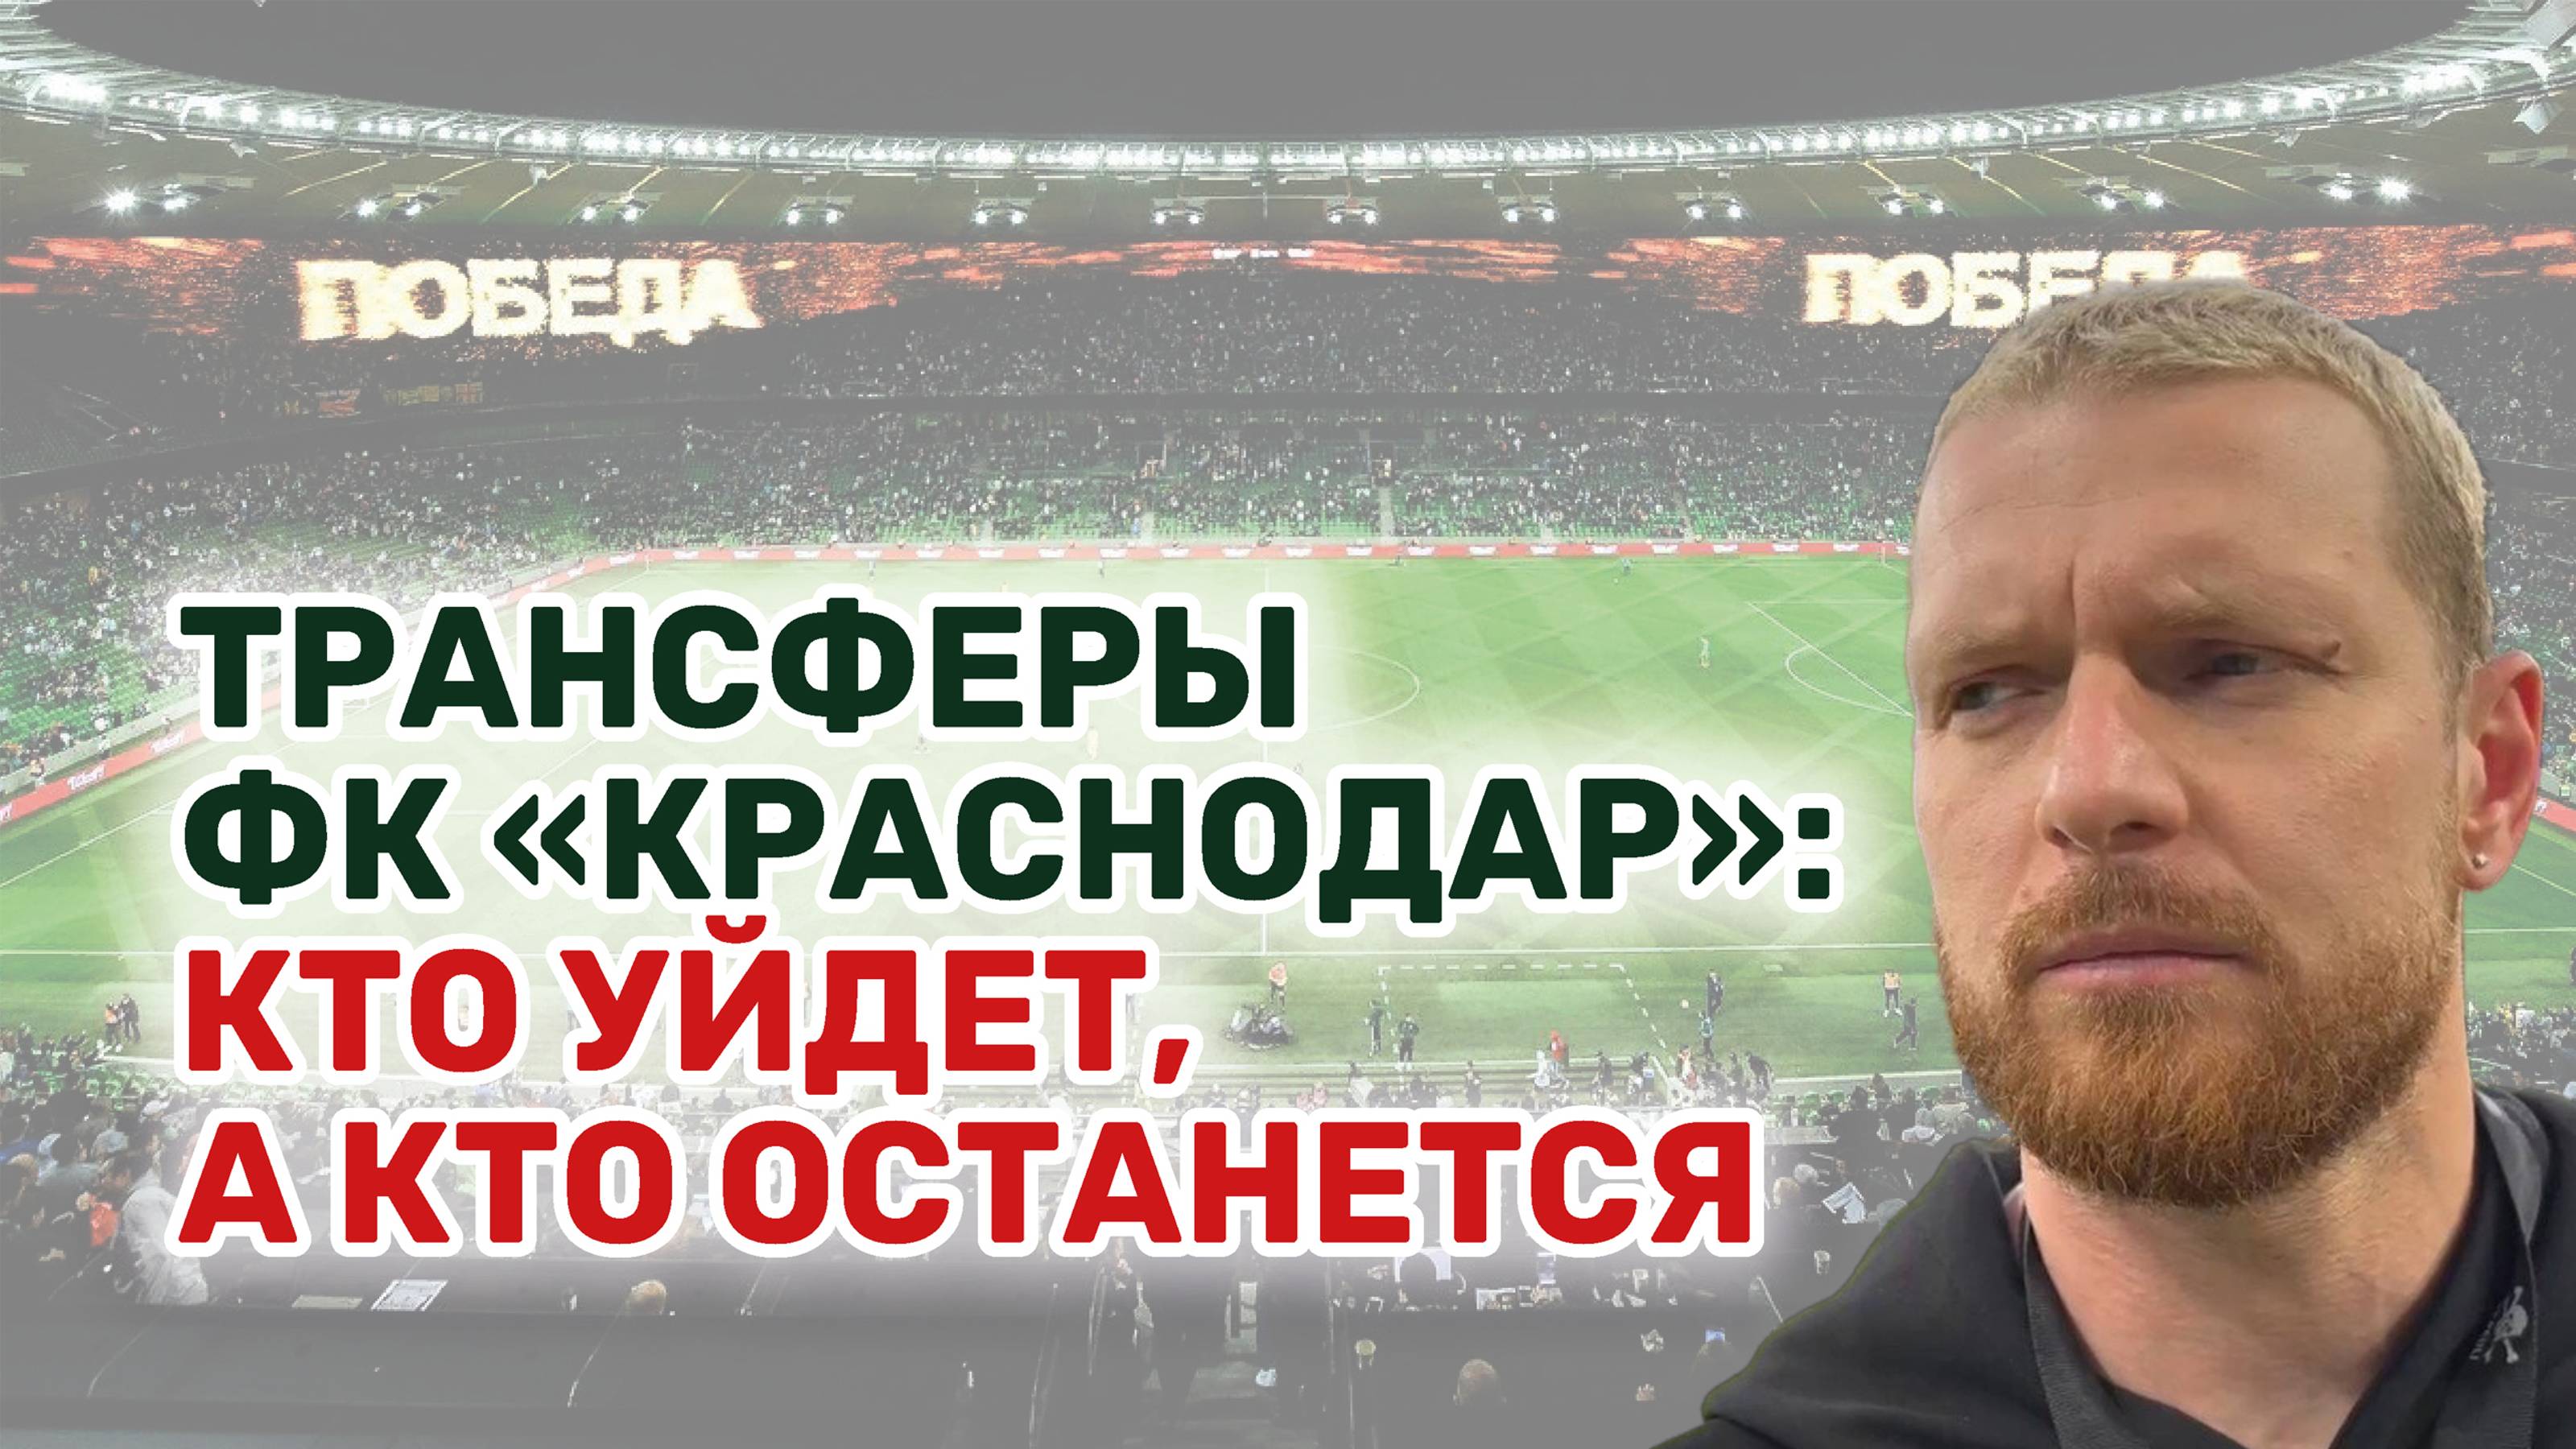 Кто вслед за Сафоновым может покинуть футбольный клуб?